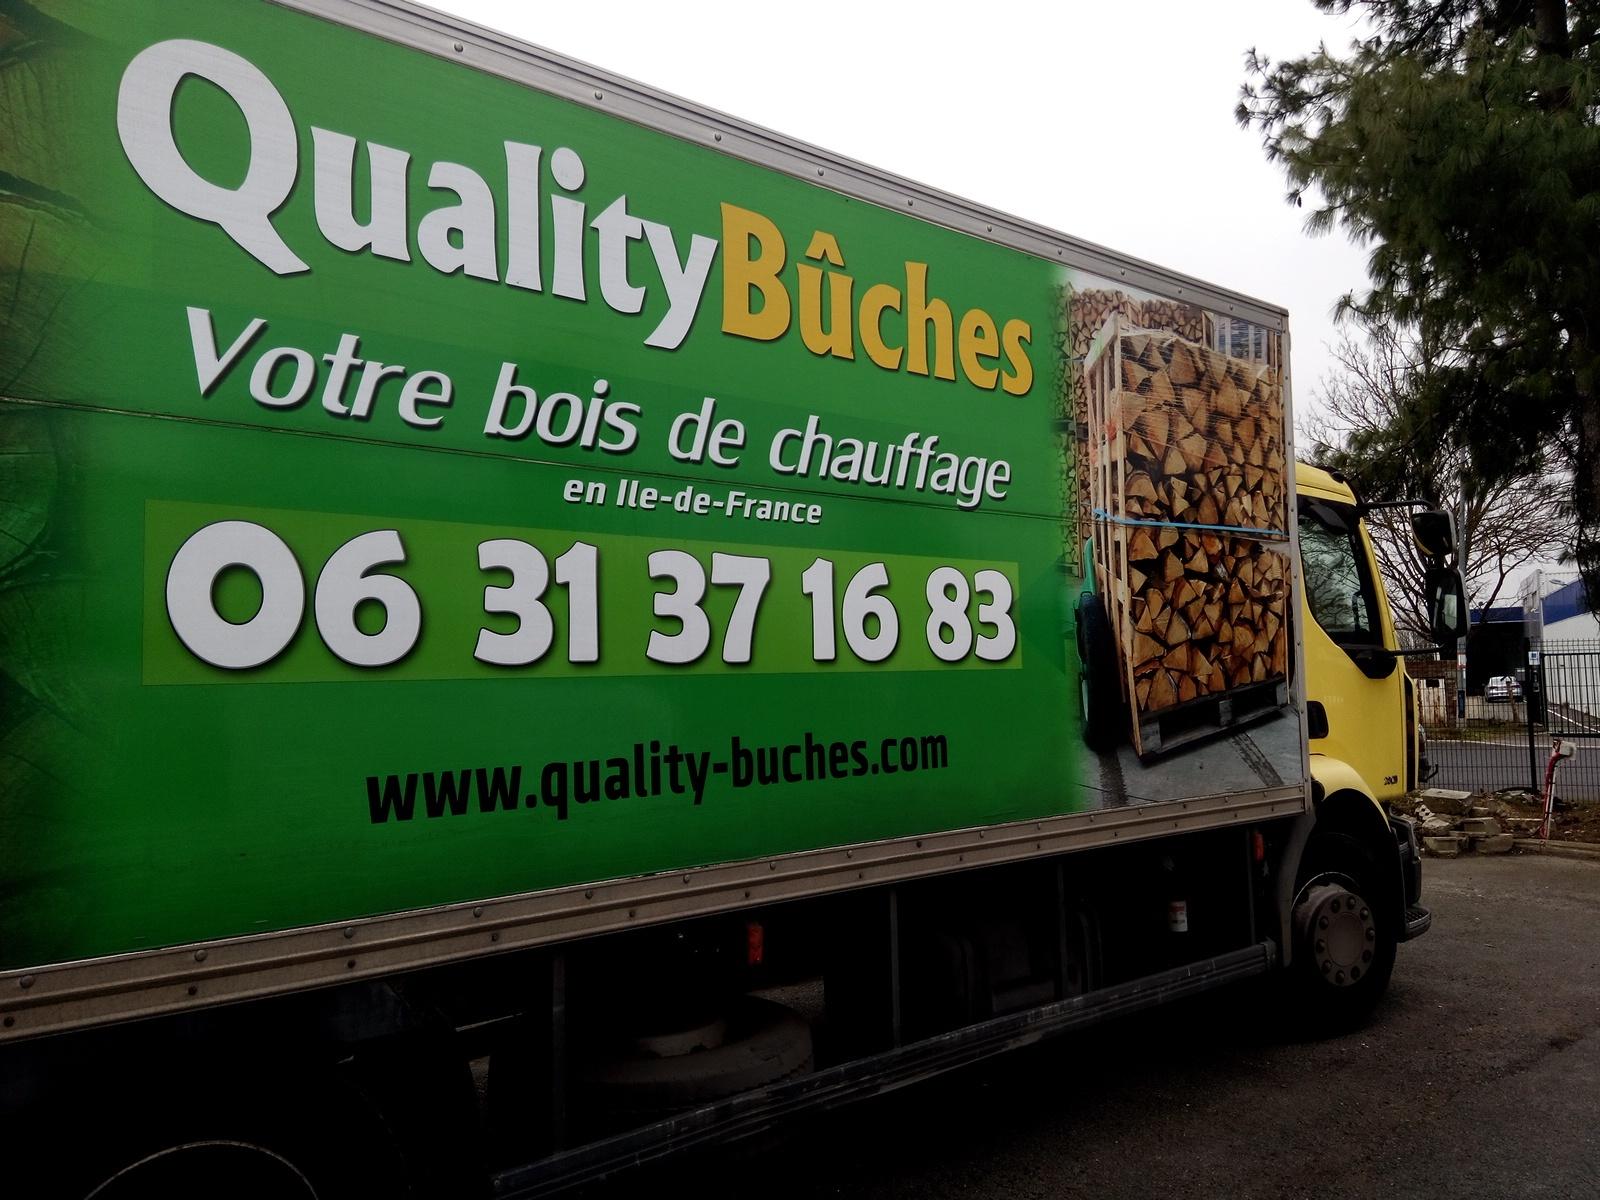 Quality-buches Créteil